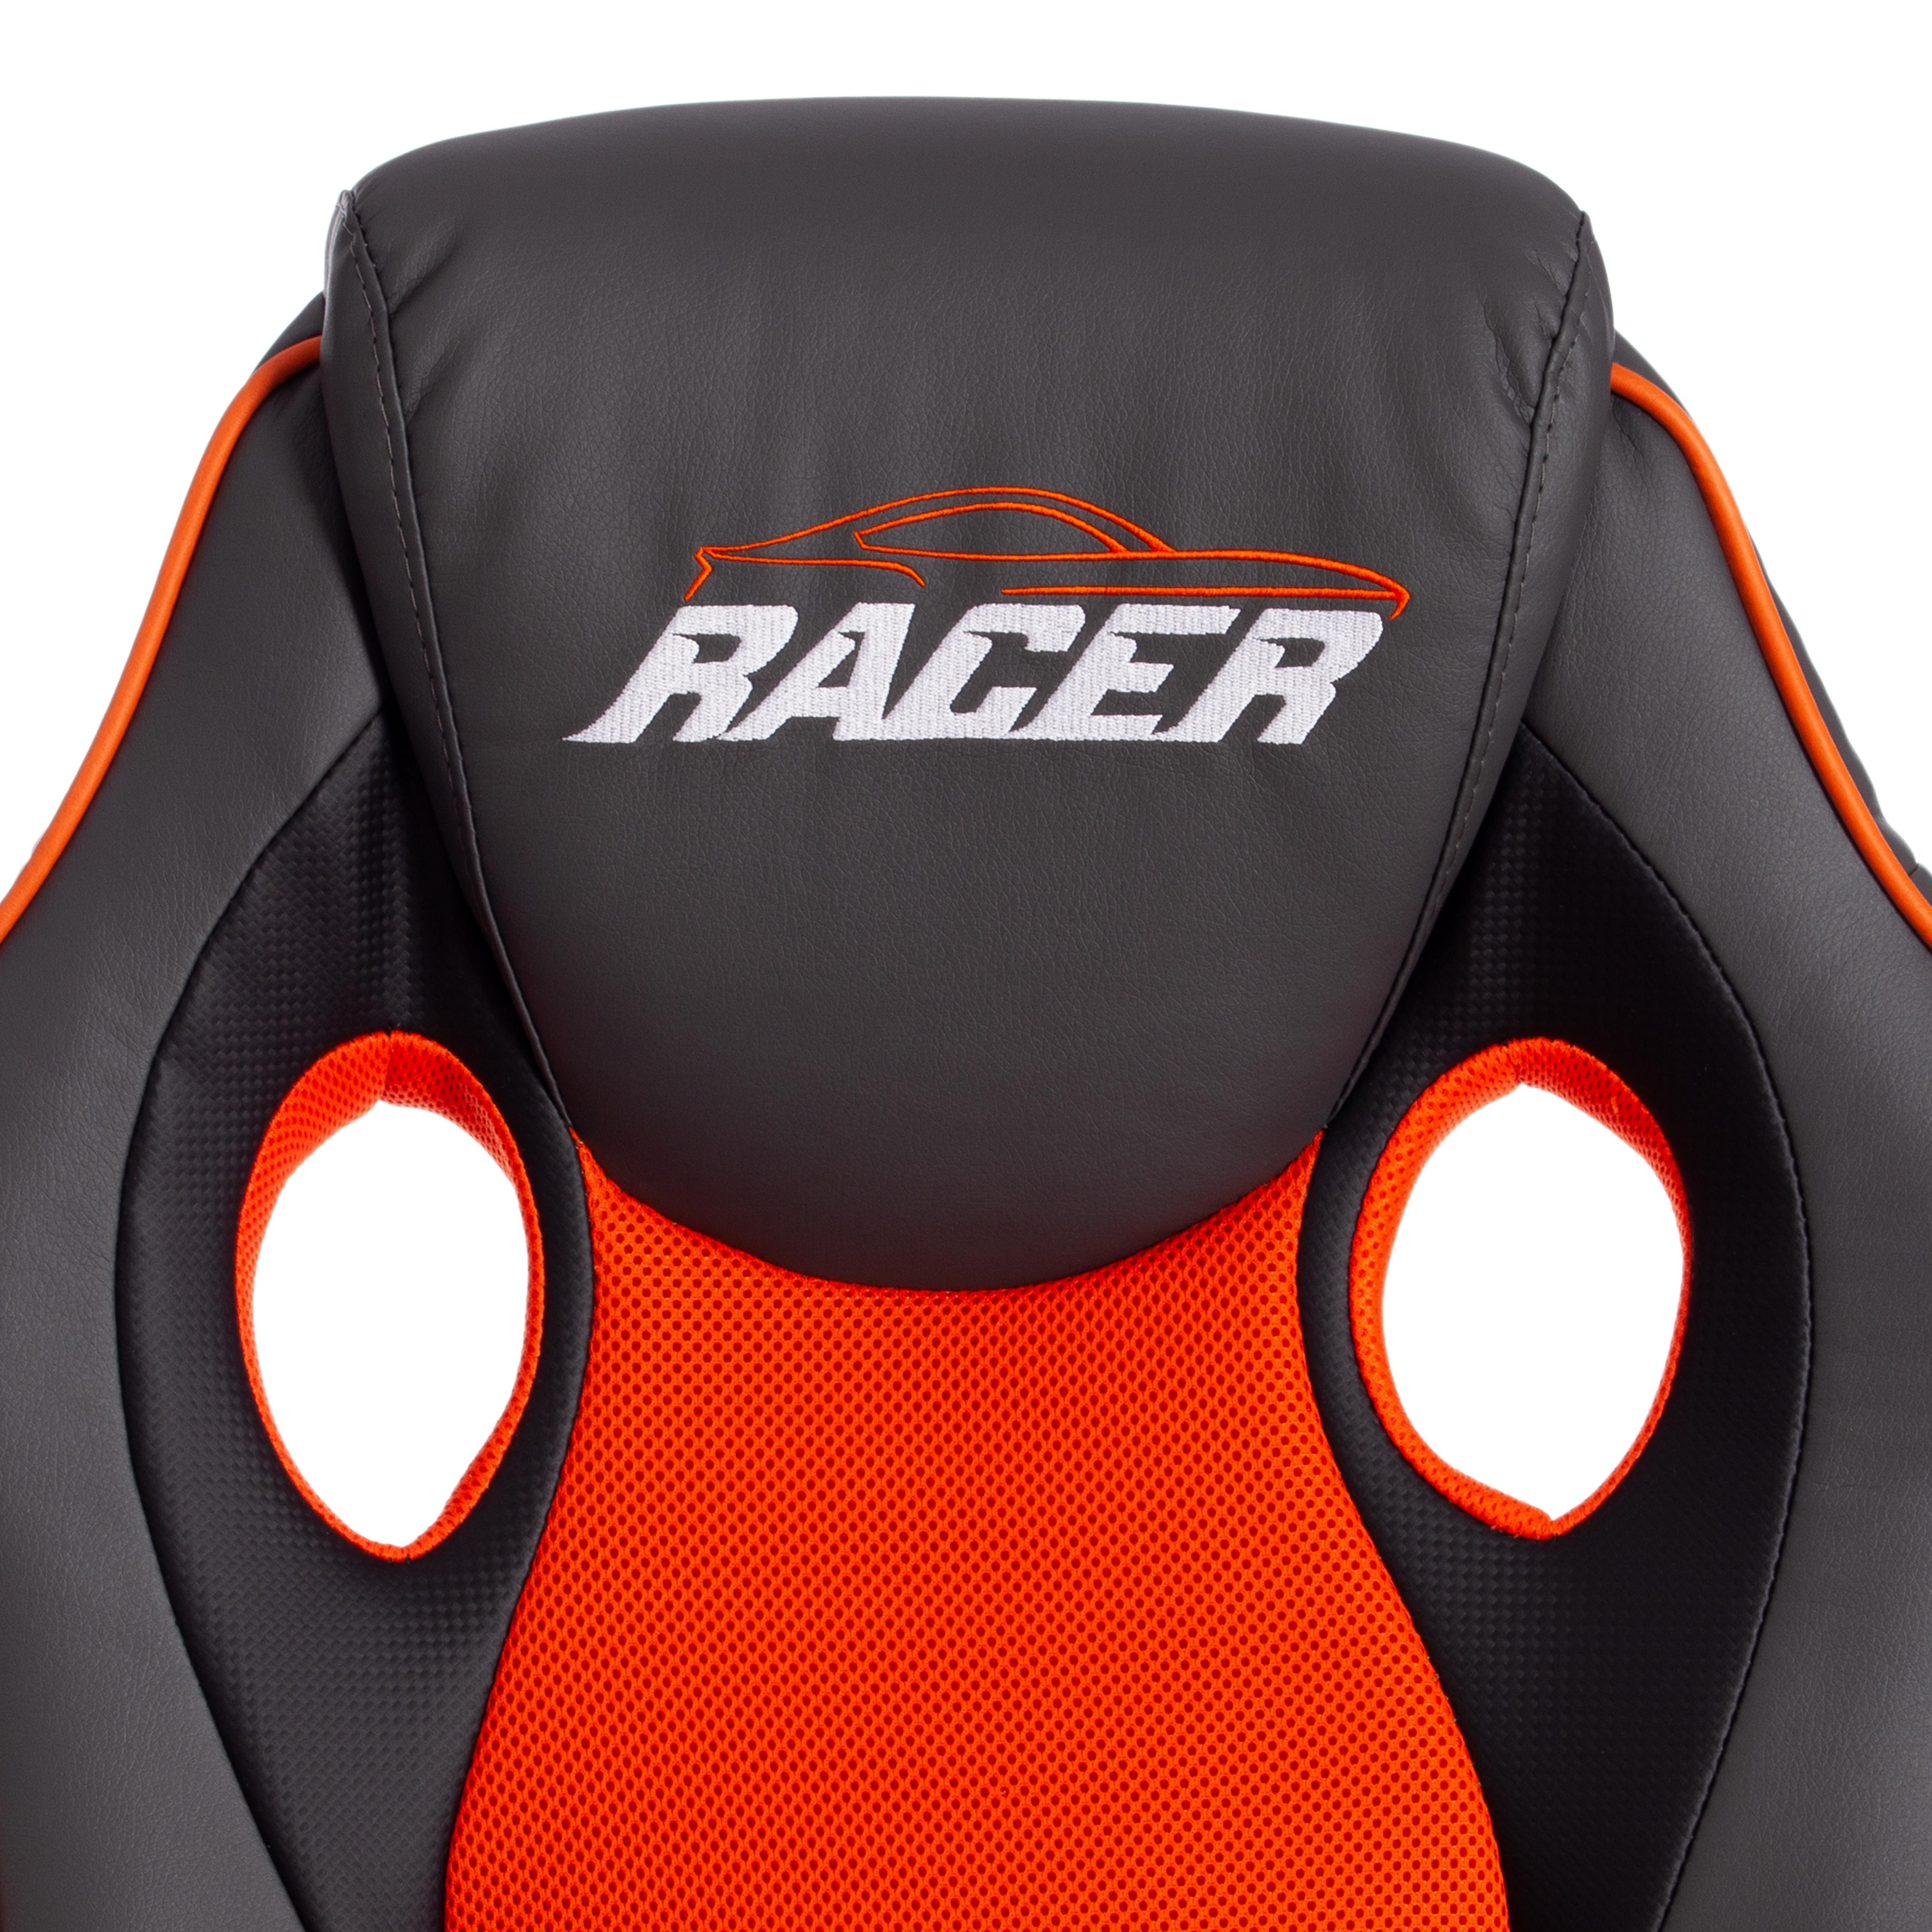 Кресло RACER GT new кож/зам/ткань, металлик/оранжевый, 36/07